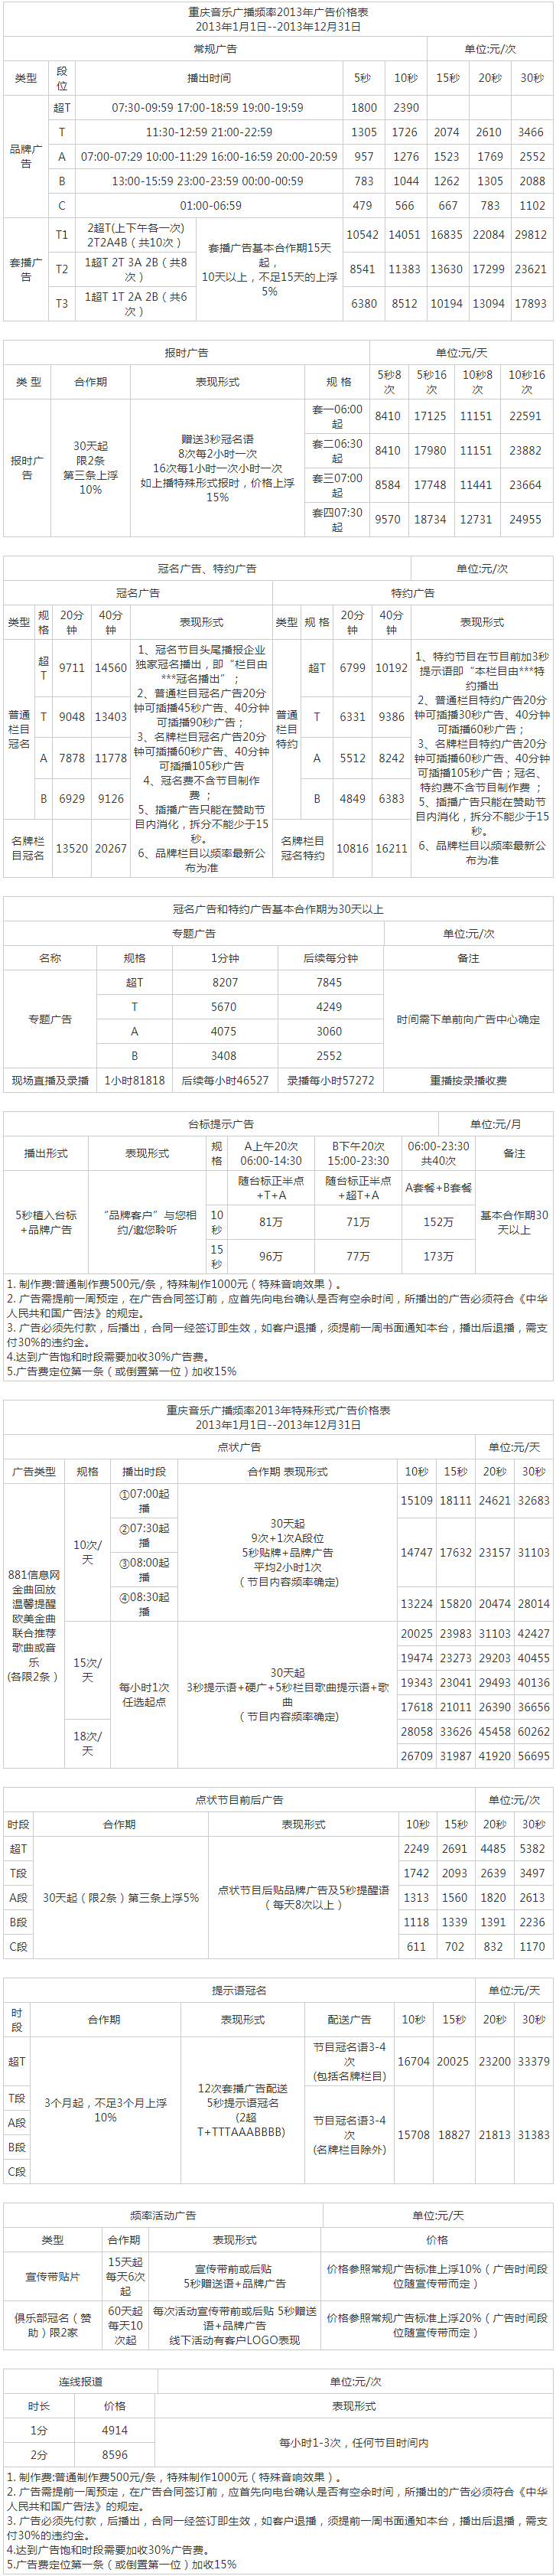 2013重庆人民广播电台音乐频道 FM88.1广告报价表.png